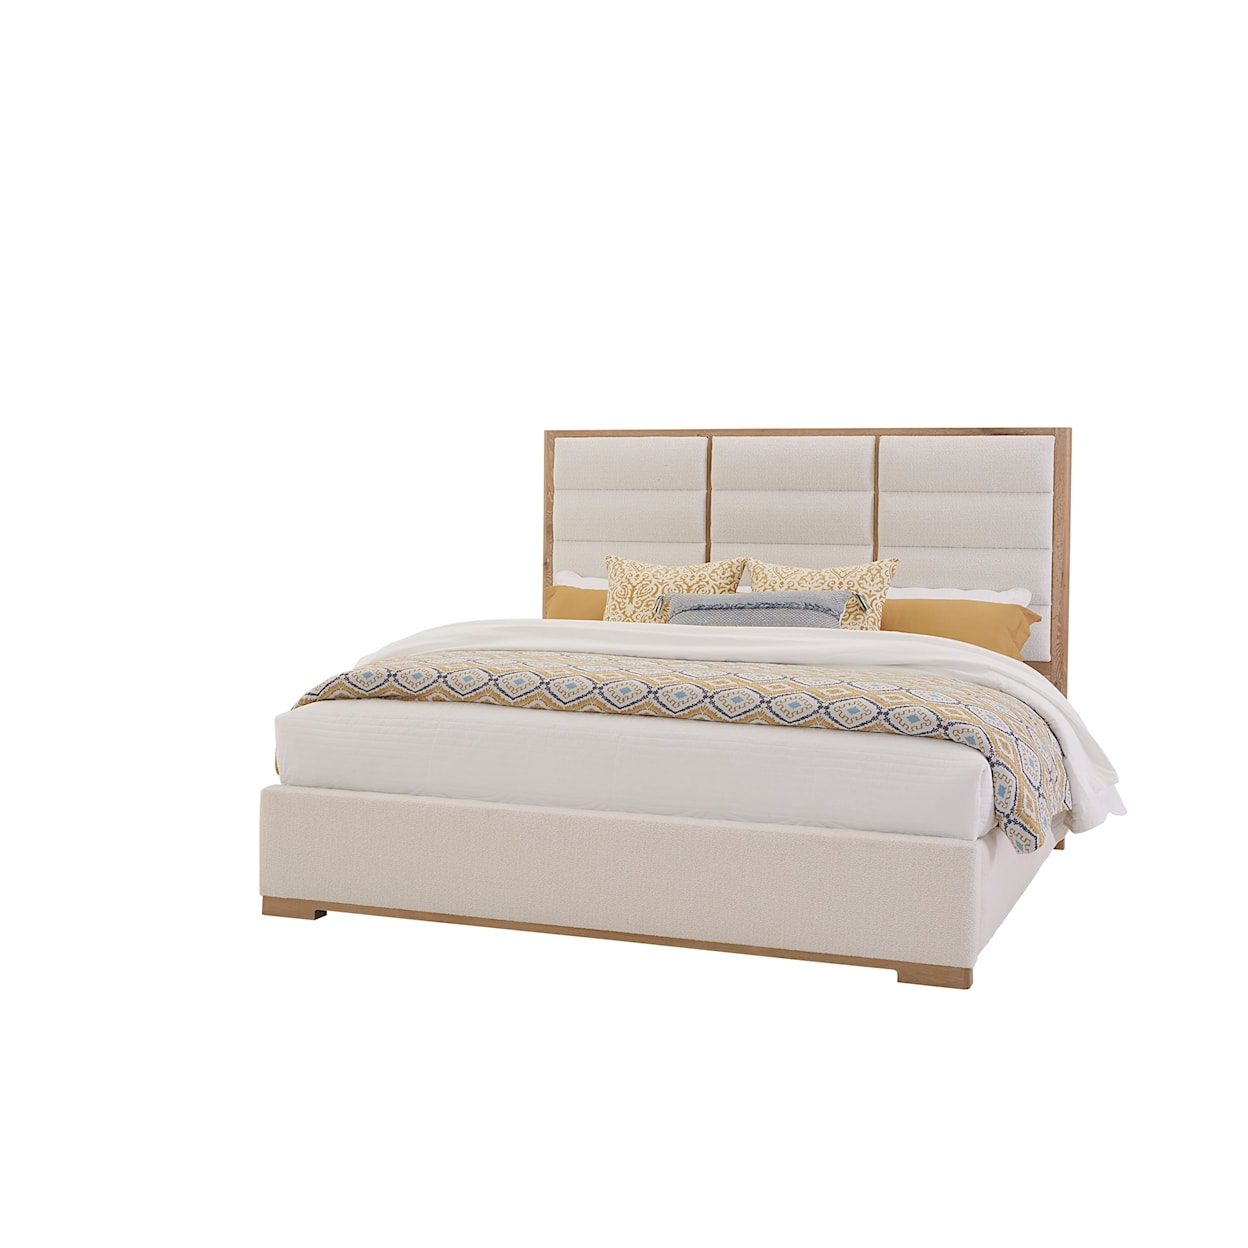 Laurel Mercantile Co. Crafted Oak Upholstered King Bedroom Set